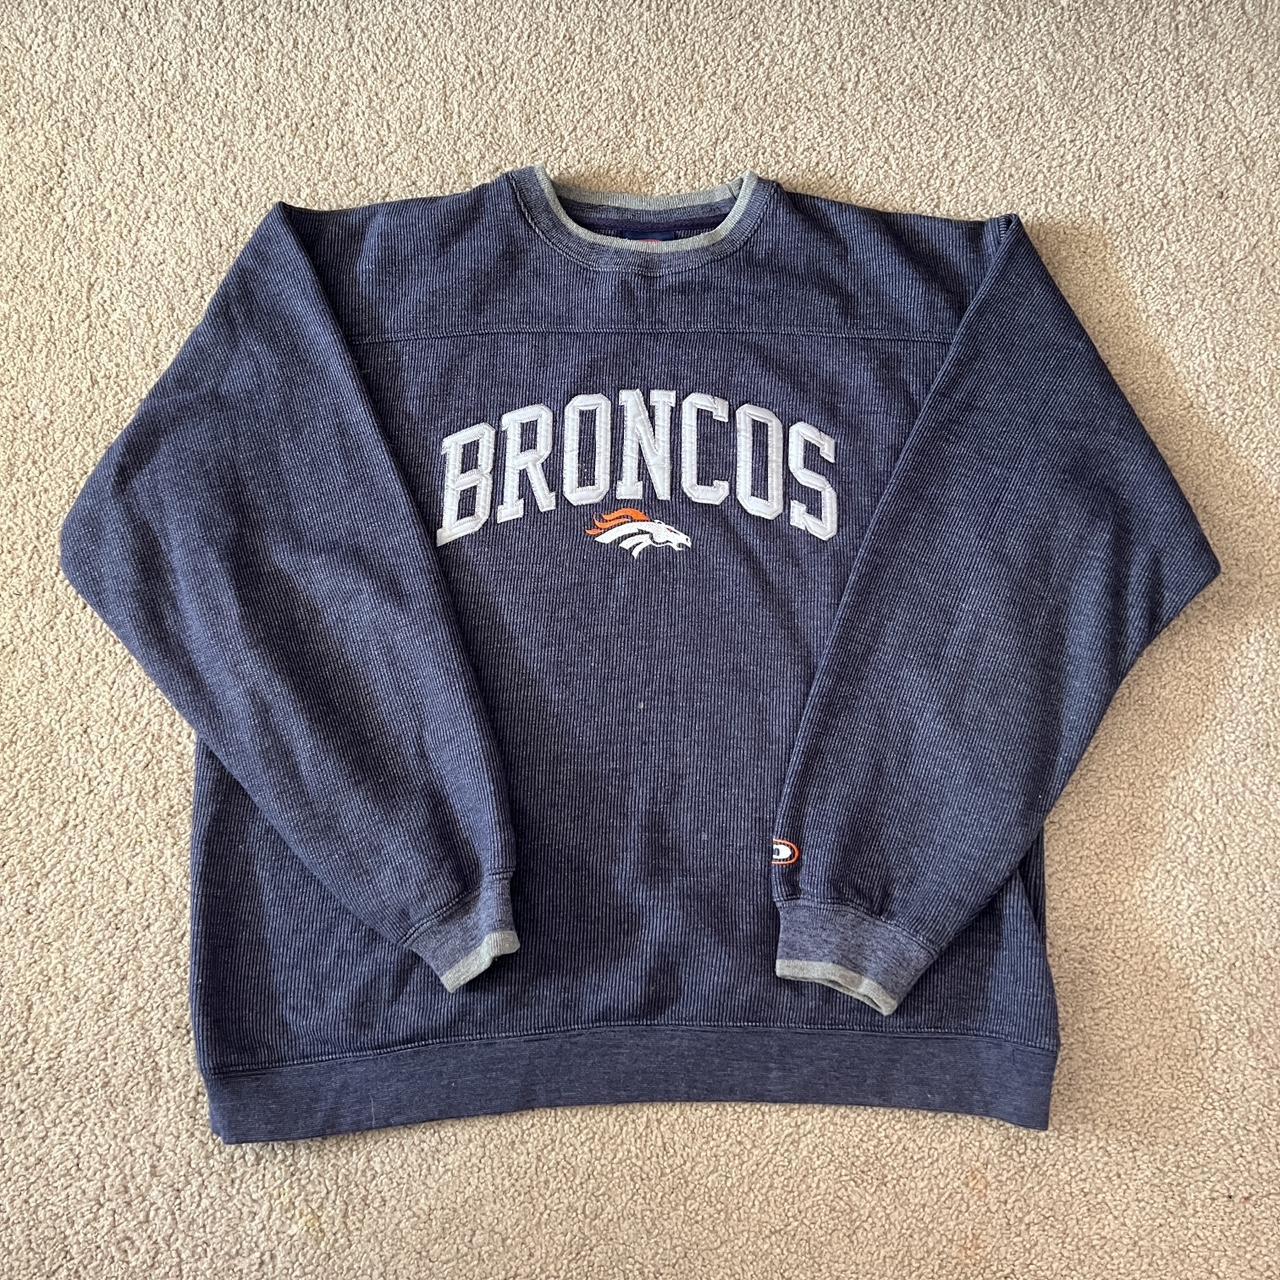 Vintage Embroidered Denver Broncos Crewneck - Depop